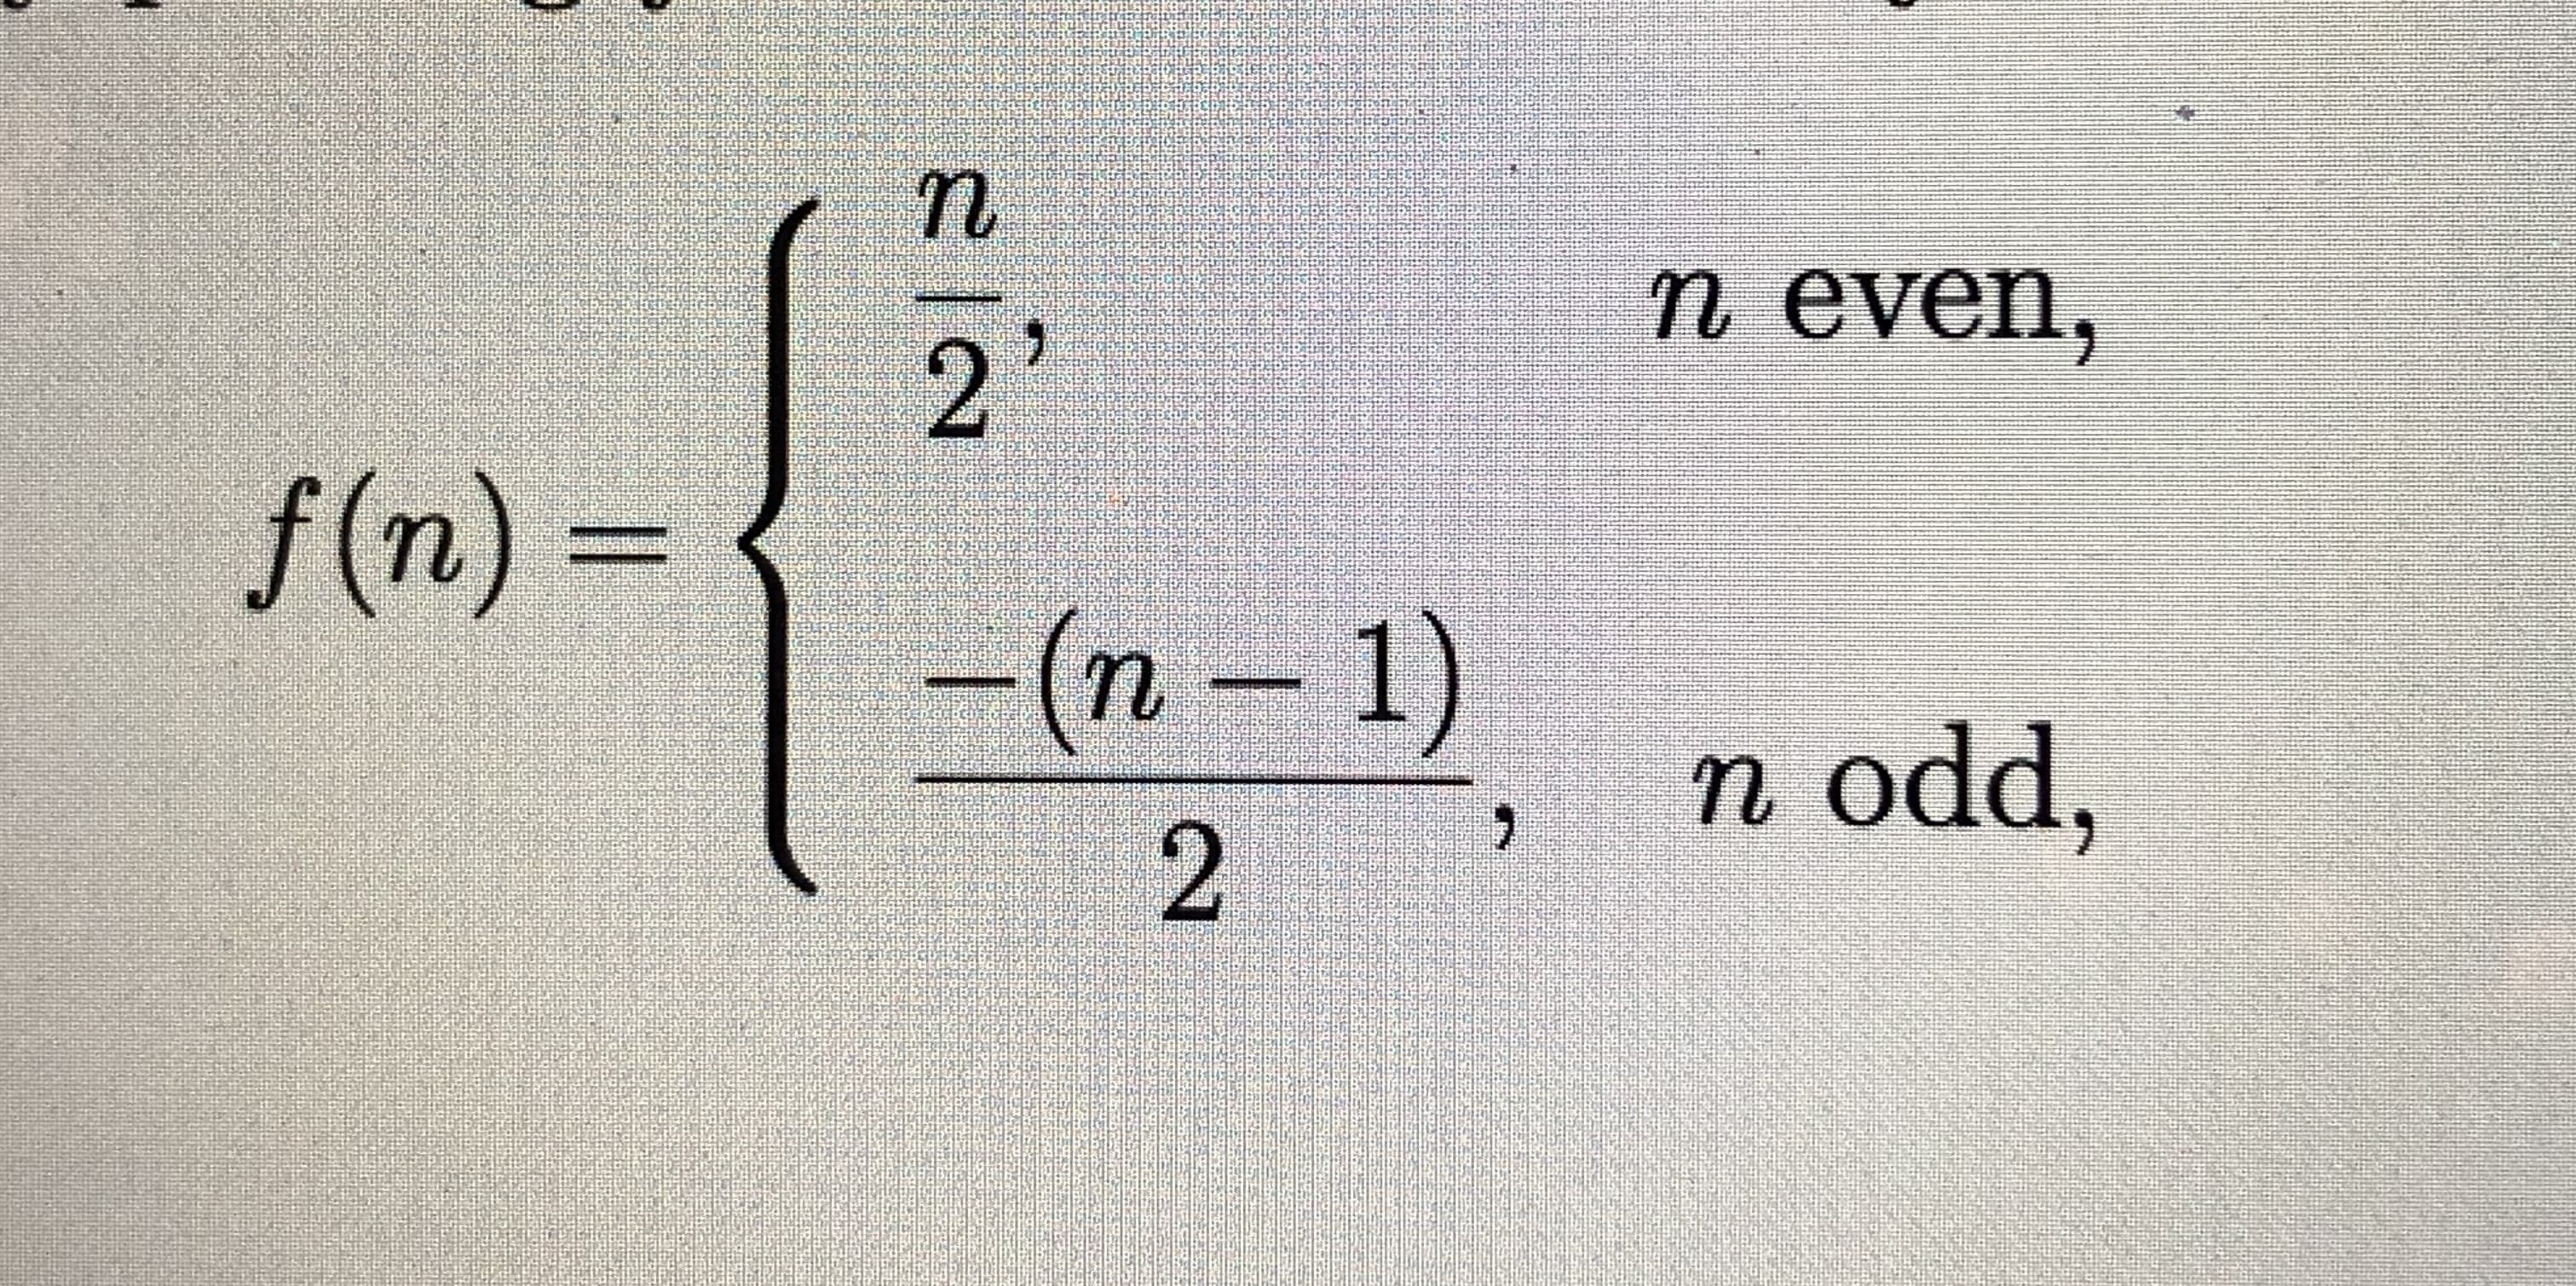 n even,
2'
f(n)%3D
(n-1)
n odd,
2.
